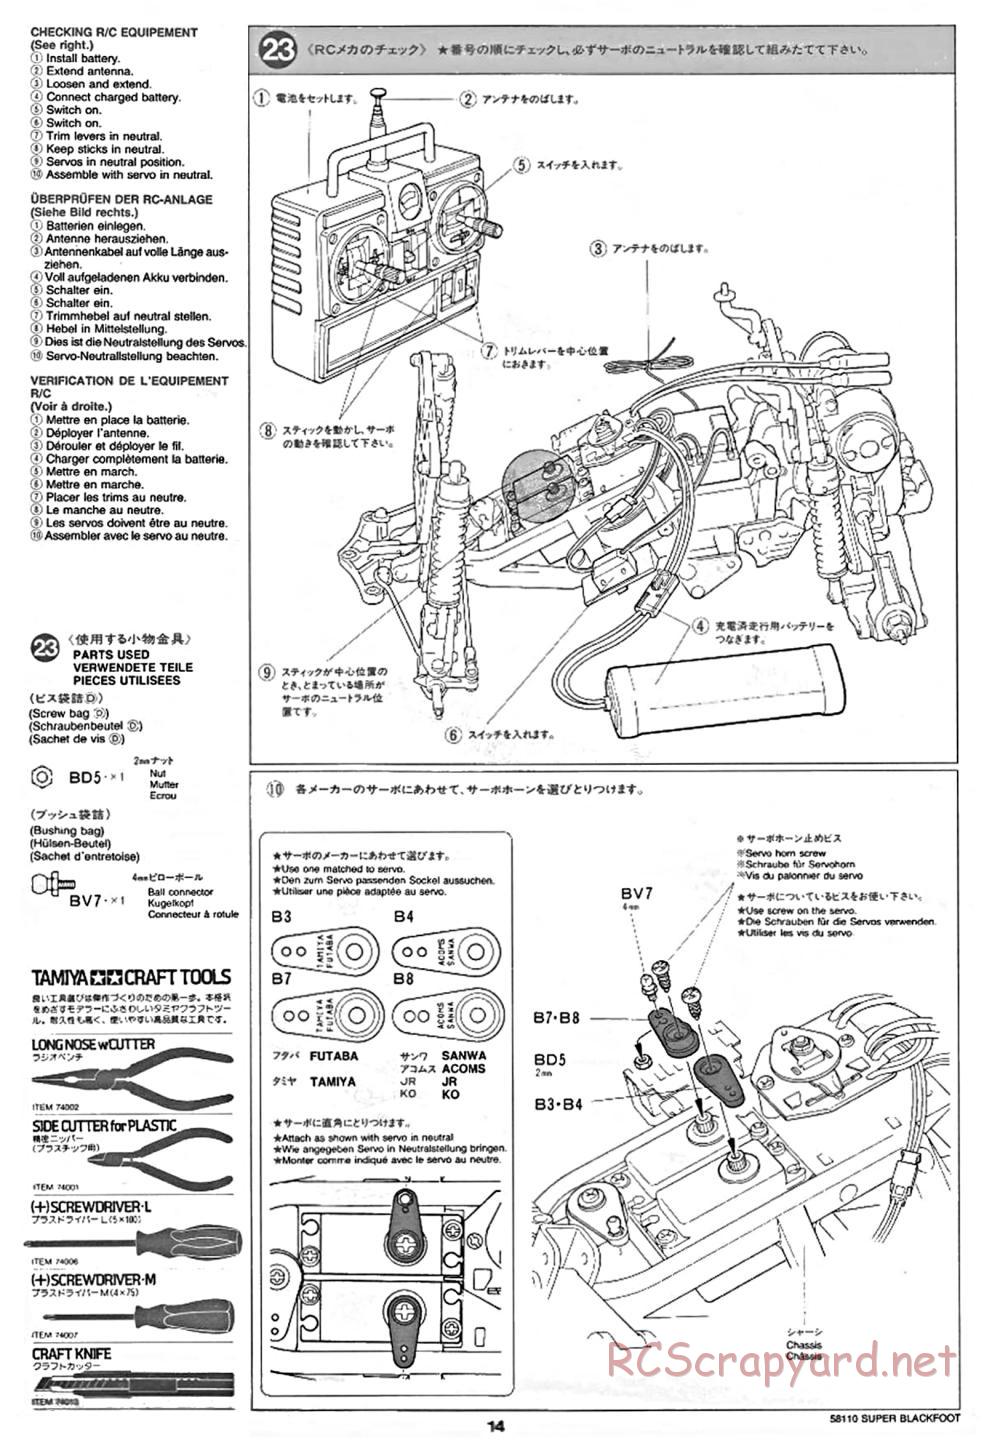 Tamiya - Super Blackfoot Chassis - Manual - Page 14